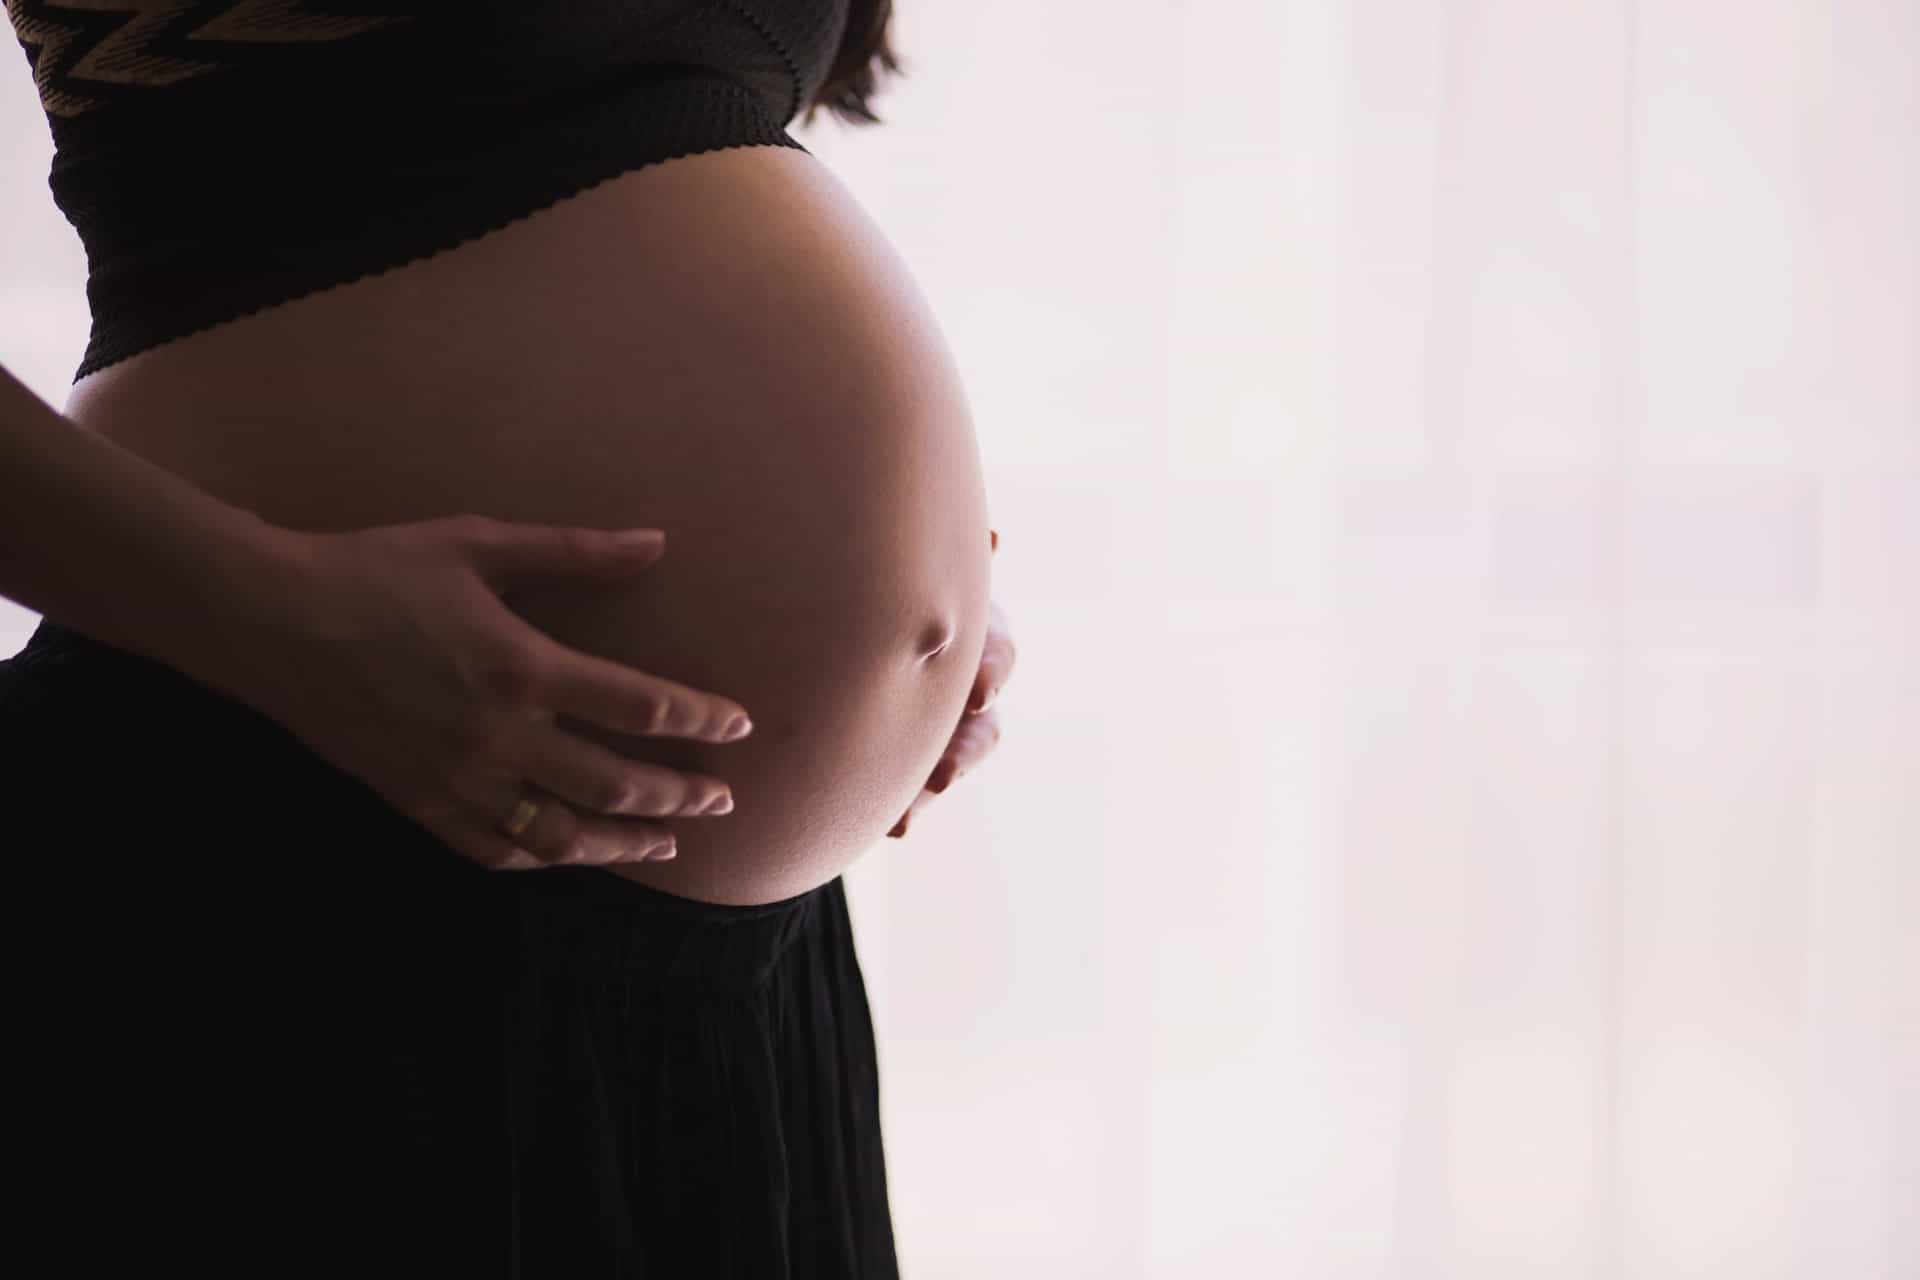 Salário maternidade: Quem tem direito? Qual valor? Como solicitar o benefício?